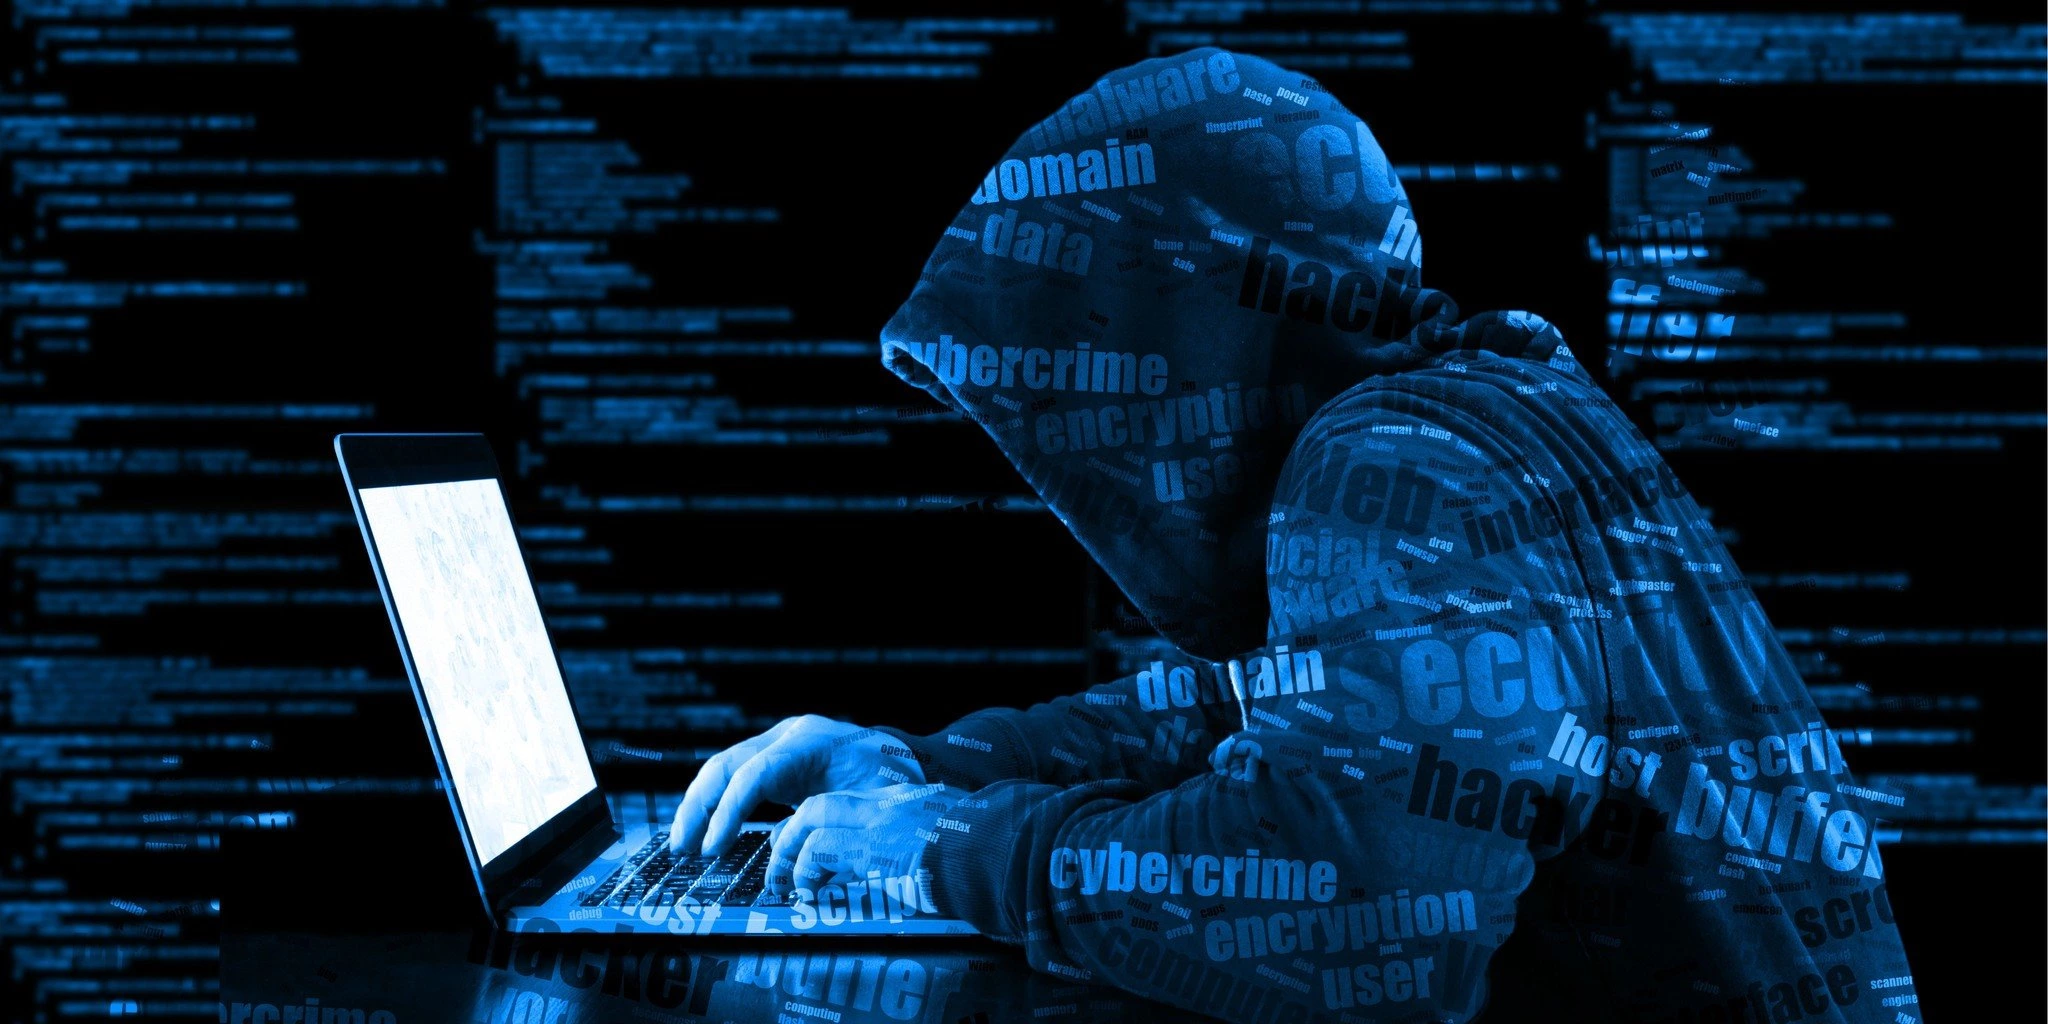 Microsoft объясняет, что китайские хакеры использовали украденный ключ подписи из аварийного дампа Windows для взлома учетных записей государственных органов США